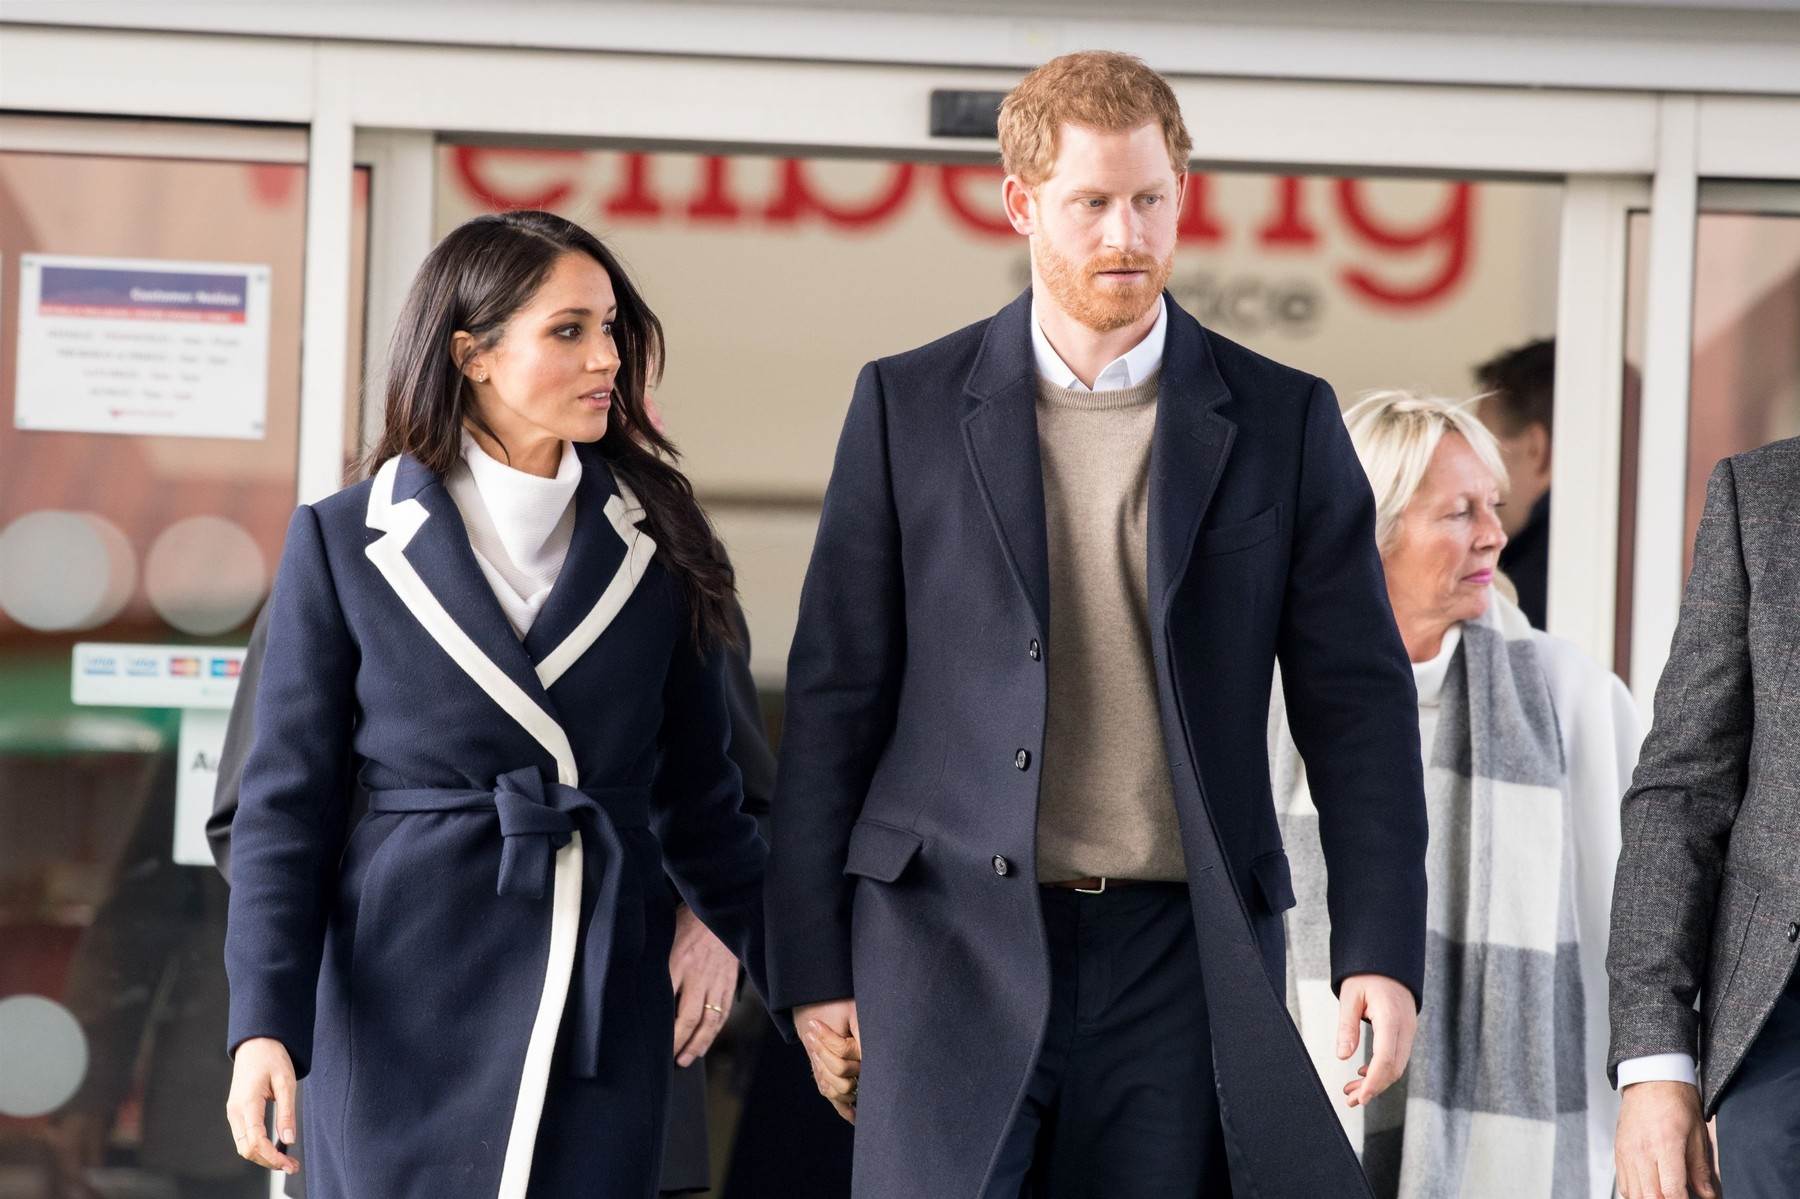  Megan Markl i princ Hari već su bili u Britaniji zbog poslovnih obaveza. 